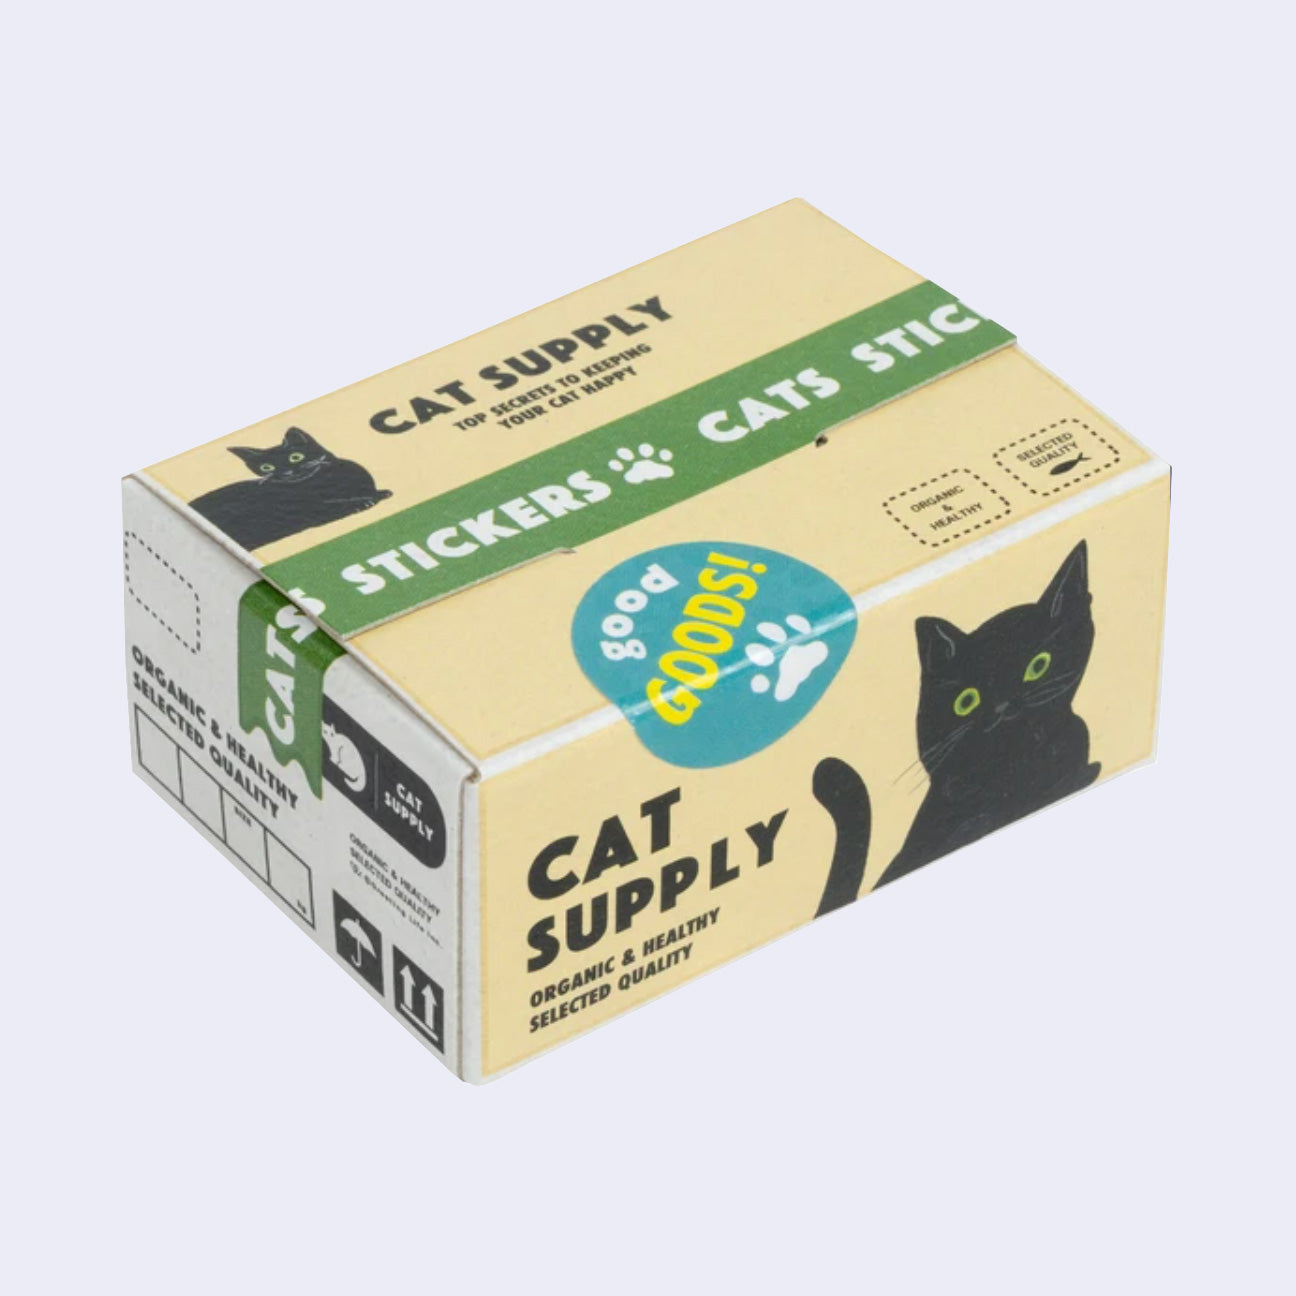 Miniature Shipping Box Flake Sticker Set - Cat Supply